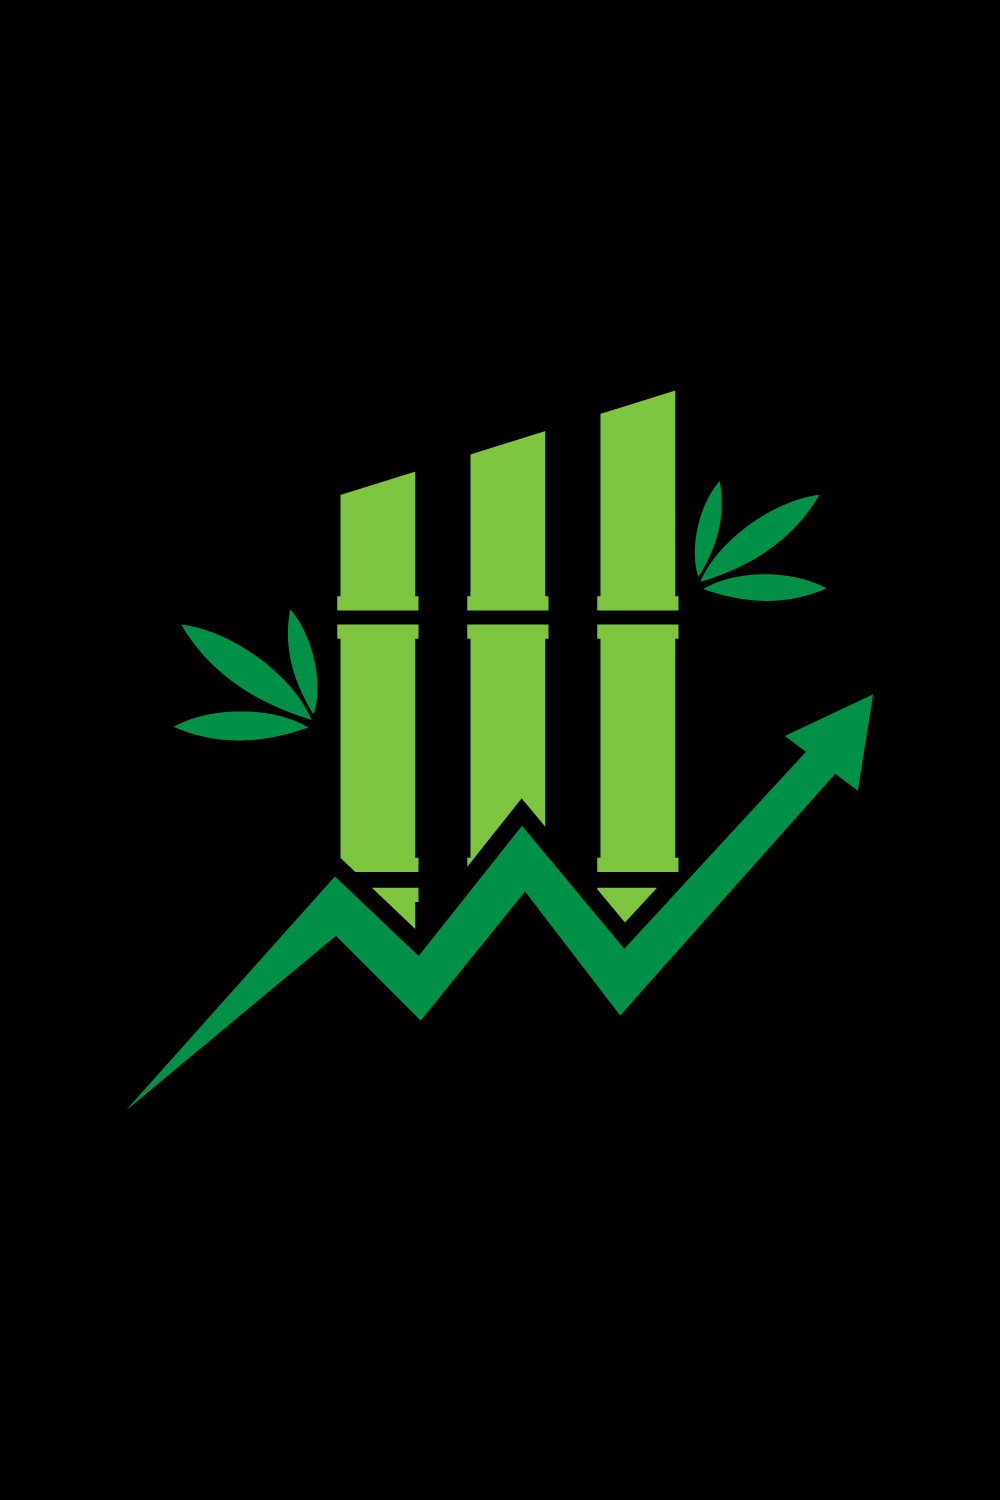 Bamboo Financial logo design, Vector design template pinterest preview image.